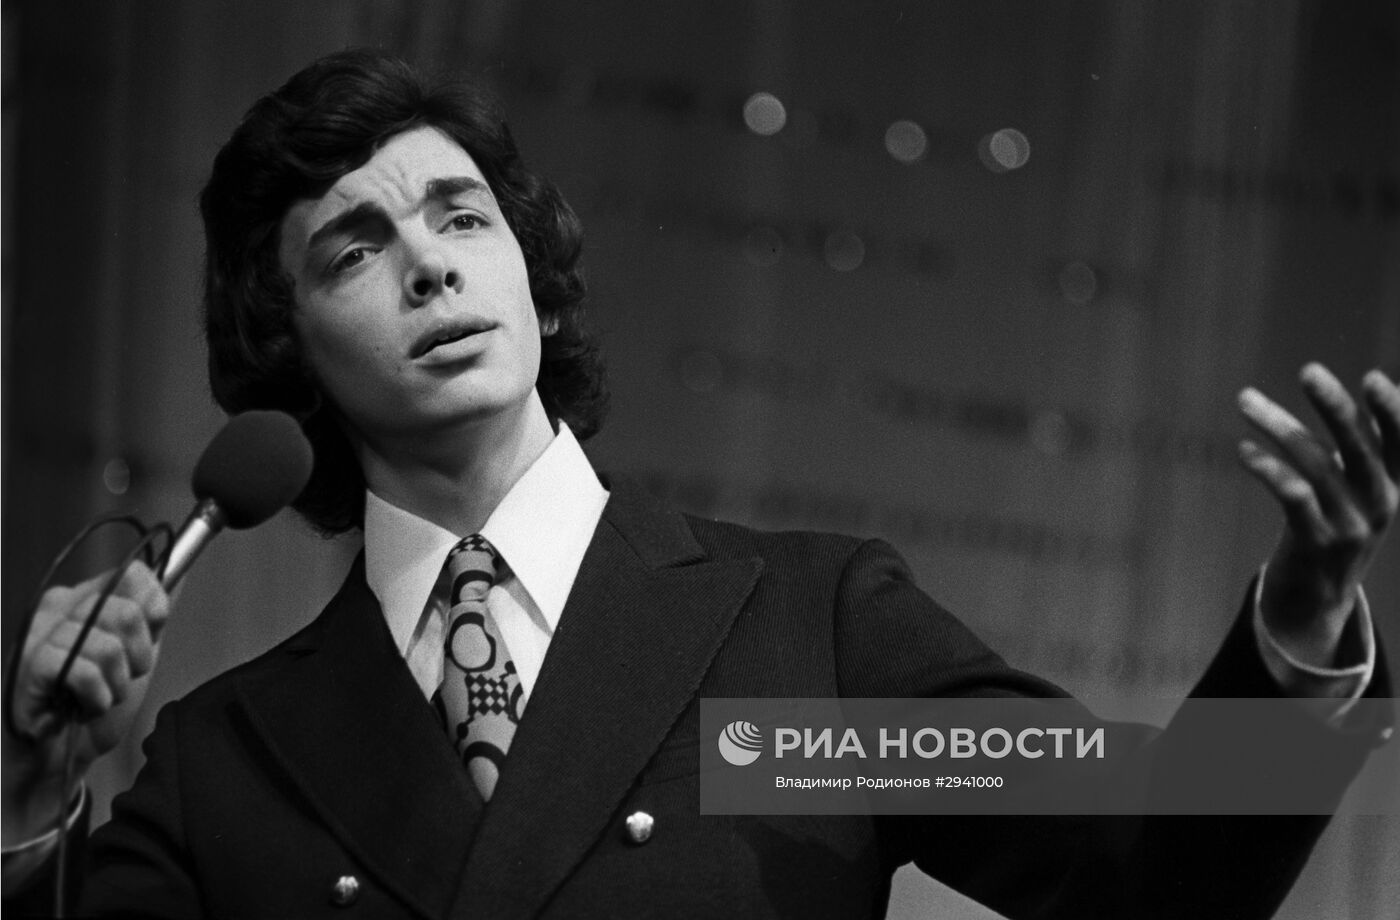 Эстрадный певец и актер Сергей Захаров